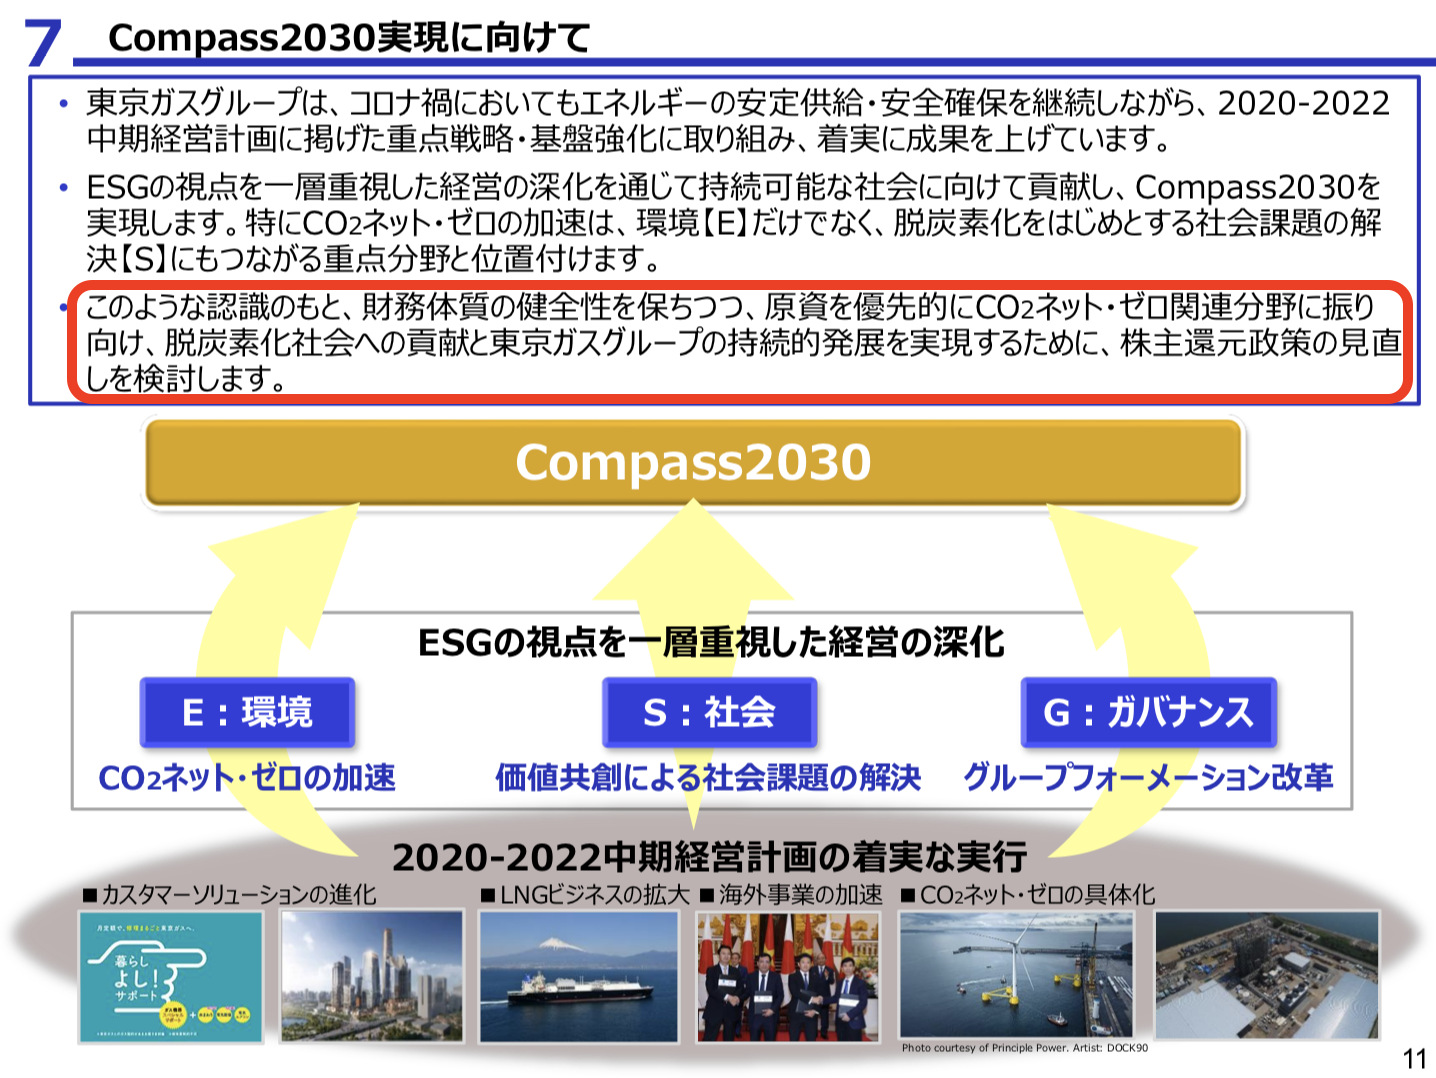 東京ガス株式会社 2020年度(2021年3月期) 決算説明会